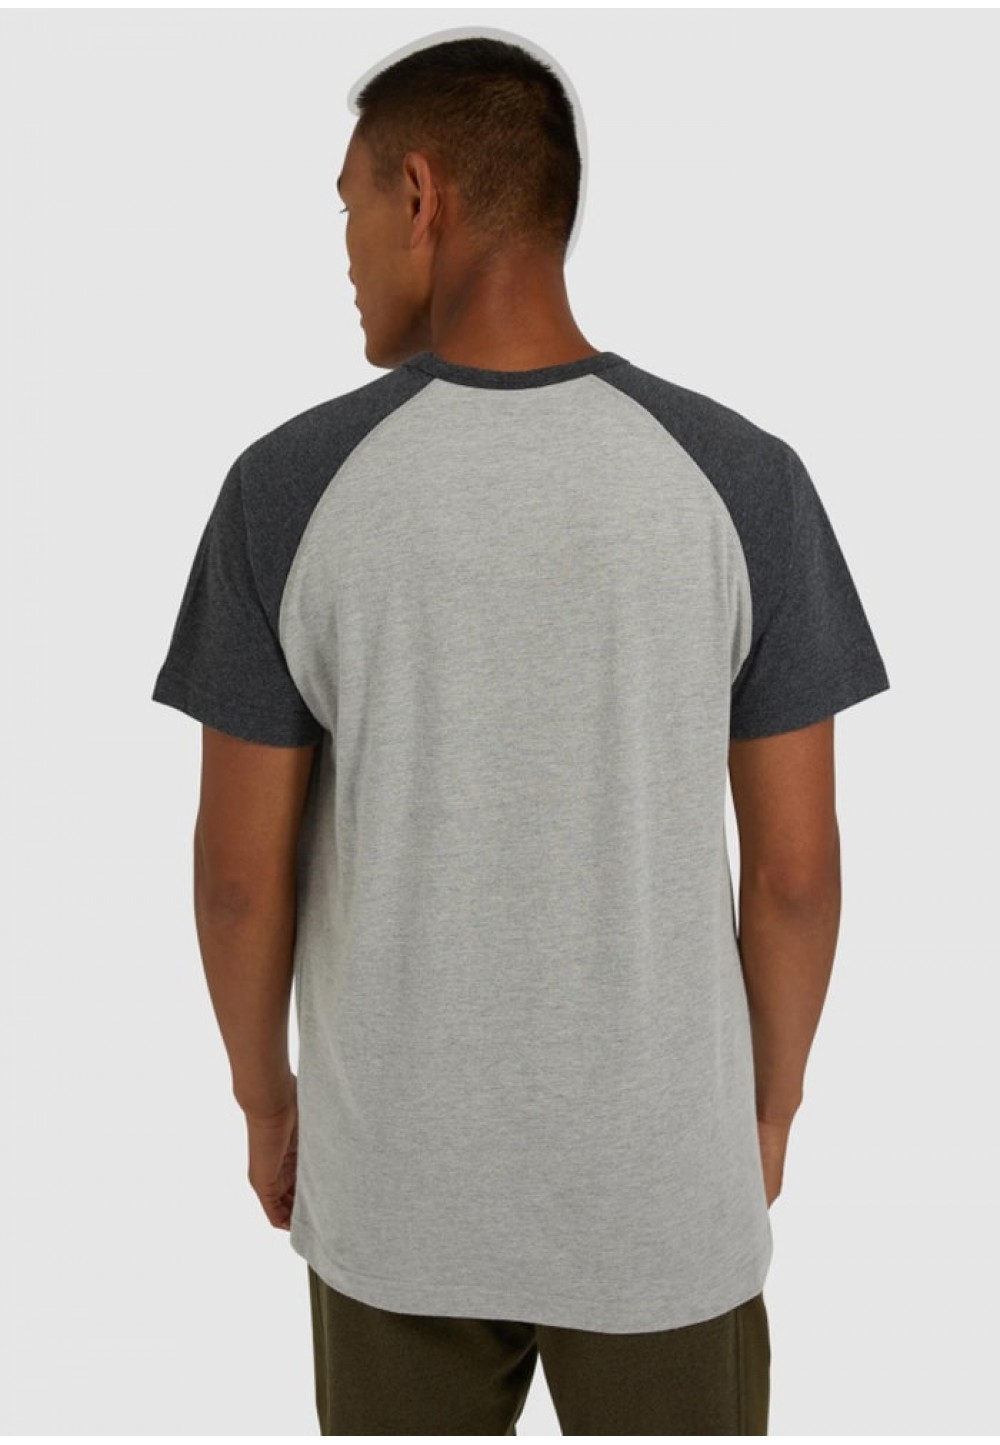  Стильна чоловіча футболка сірого кольору